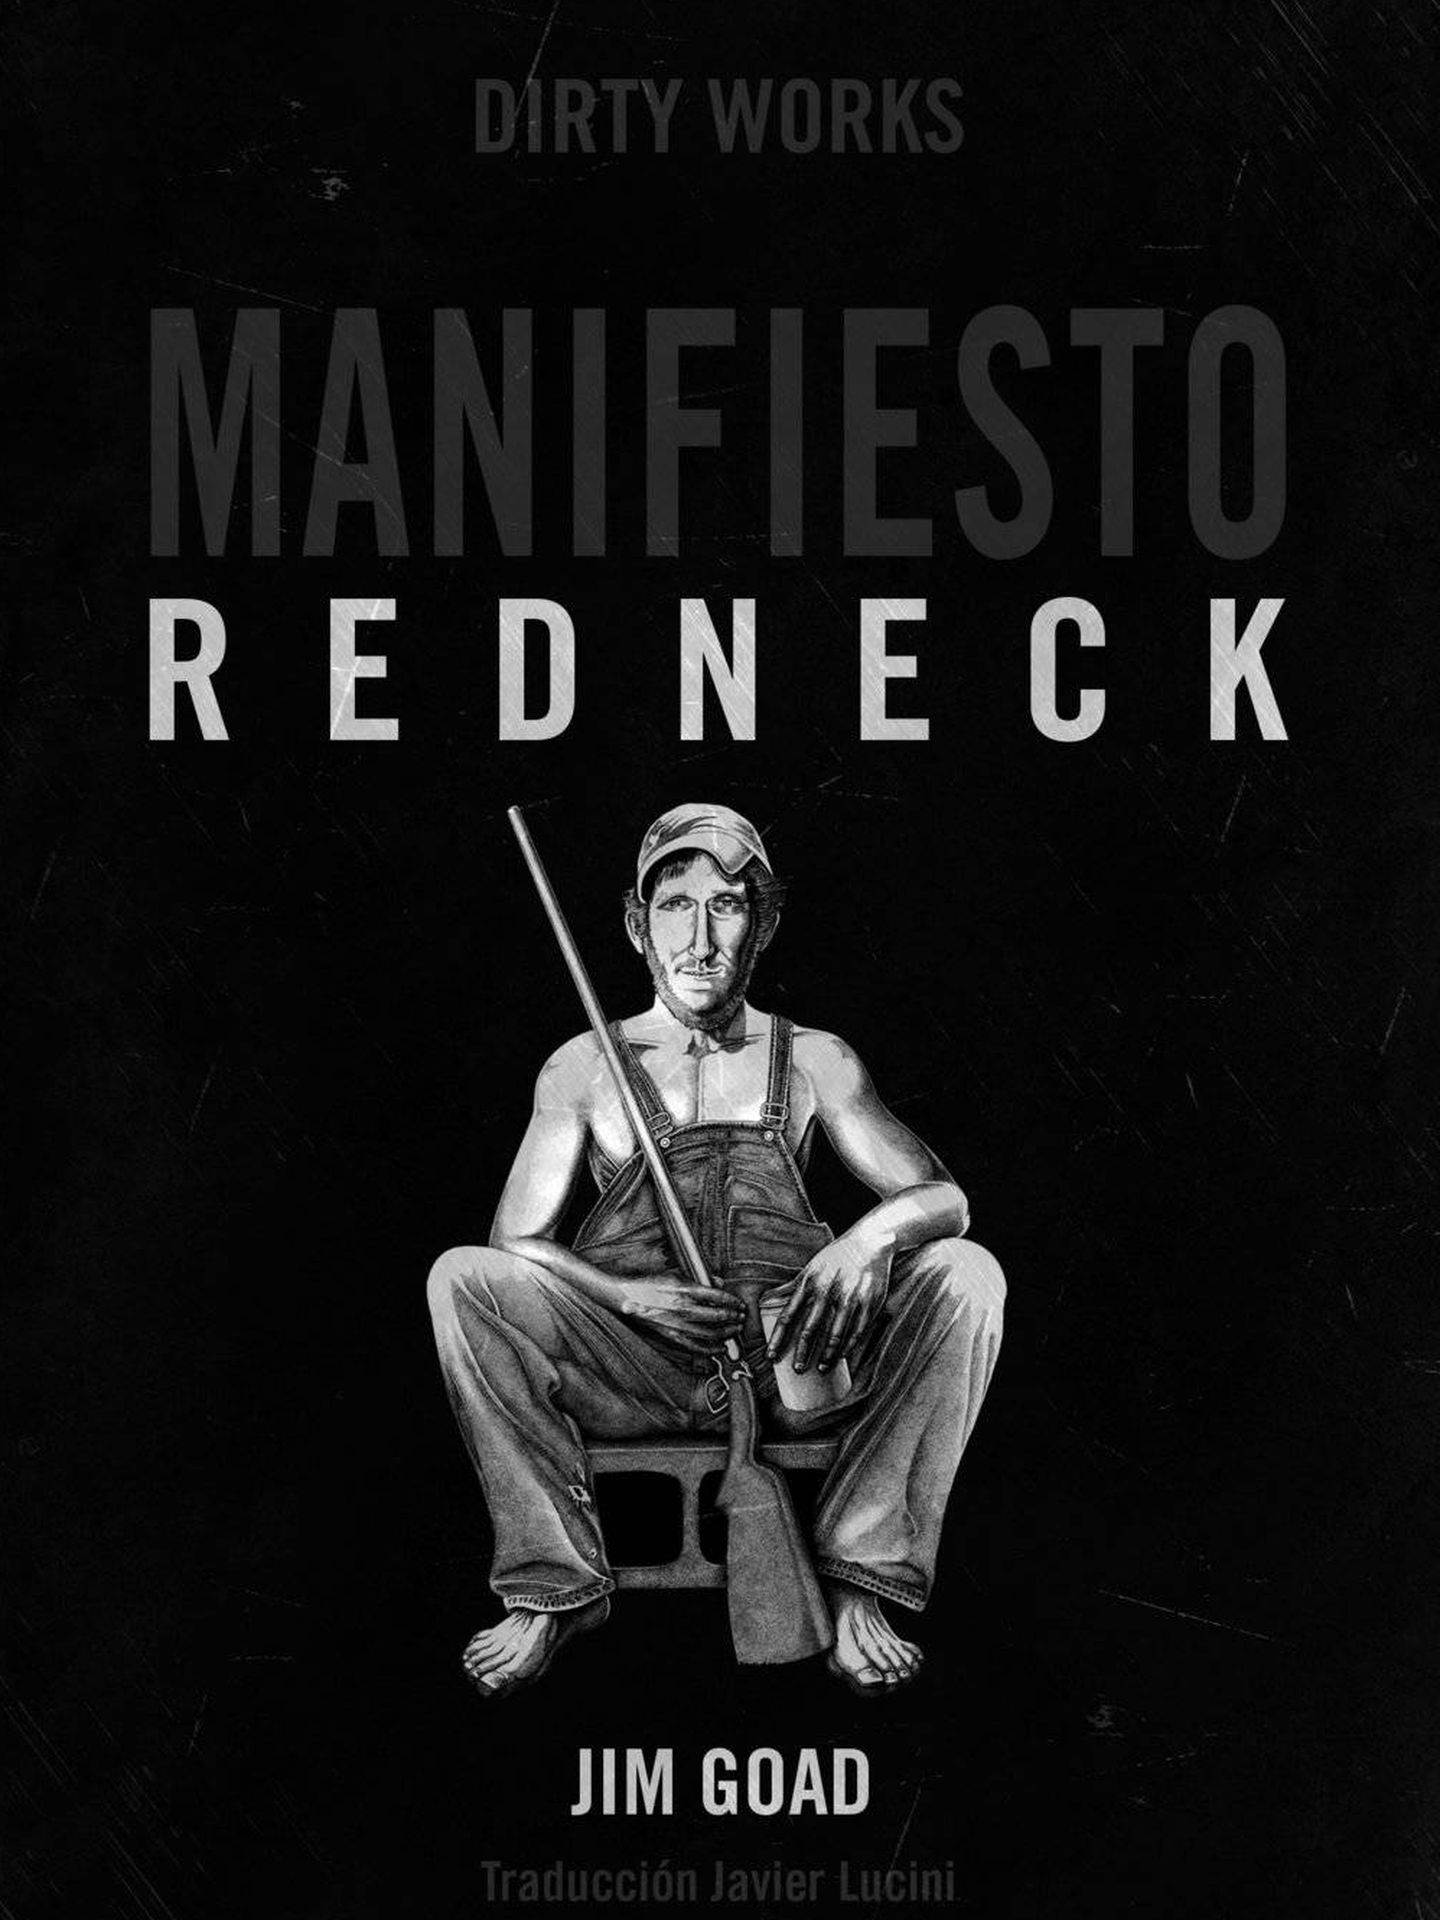 'Manifiesto redneck'